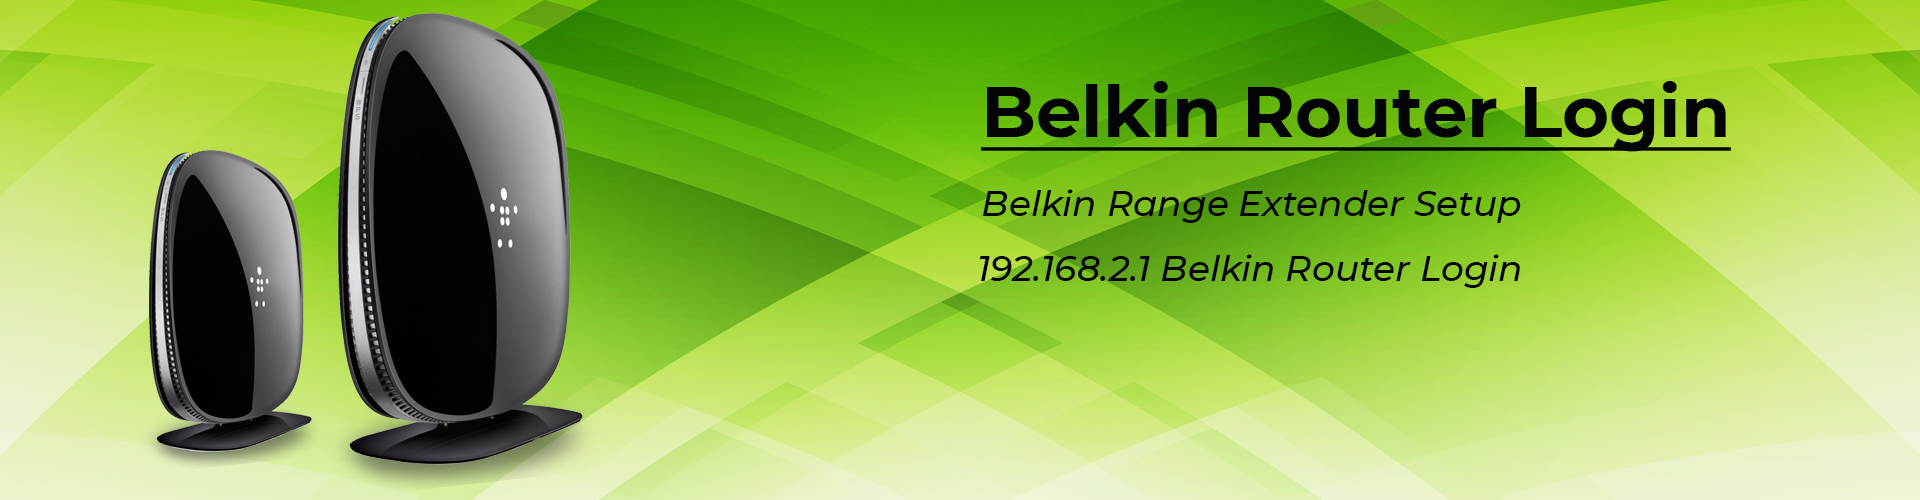 Belkin router login